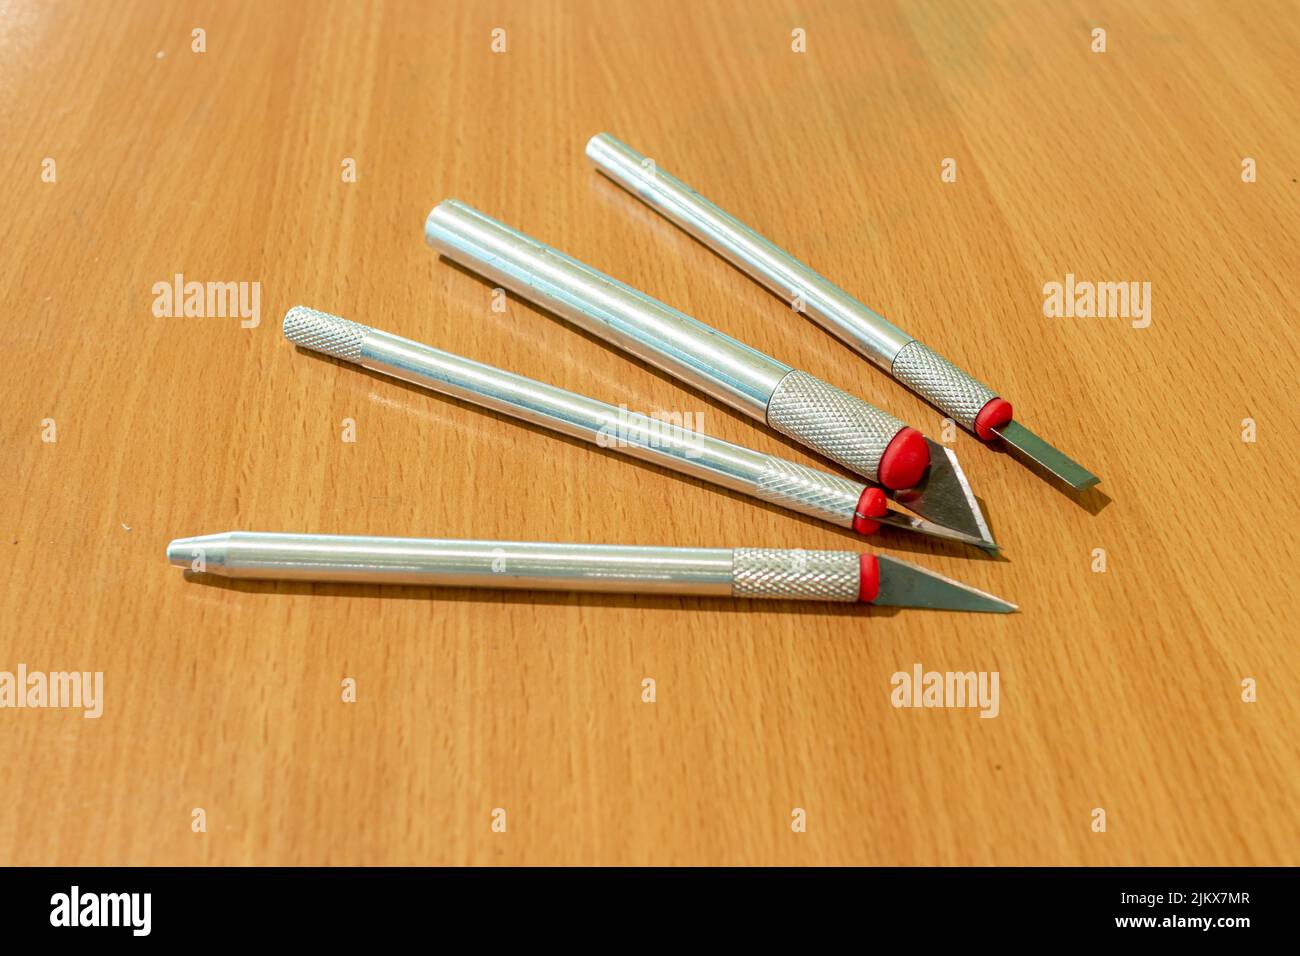 Verschiedene scharfe Präzisionsmesser mit verschiedenen Klingen auf einer lackierten Holzoberfläche Stockfoto